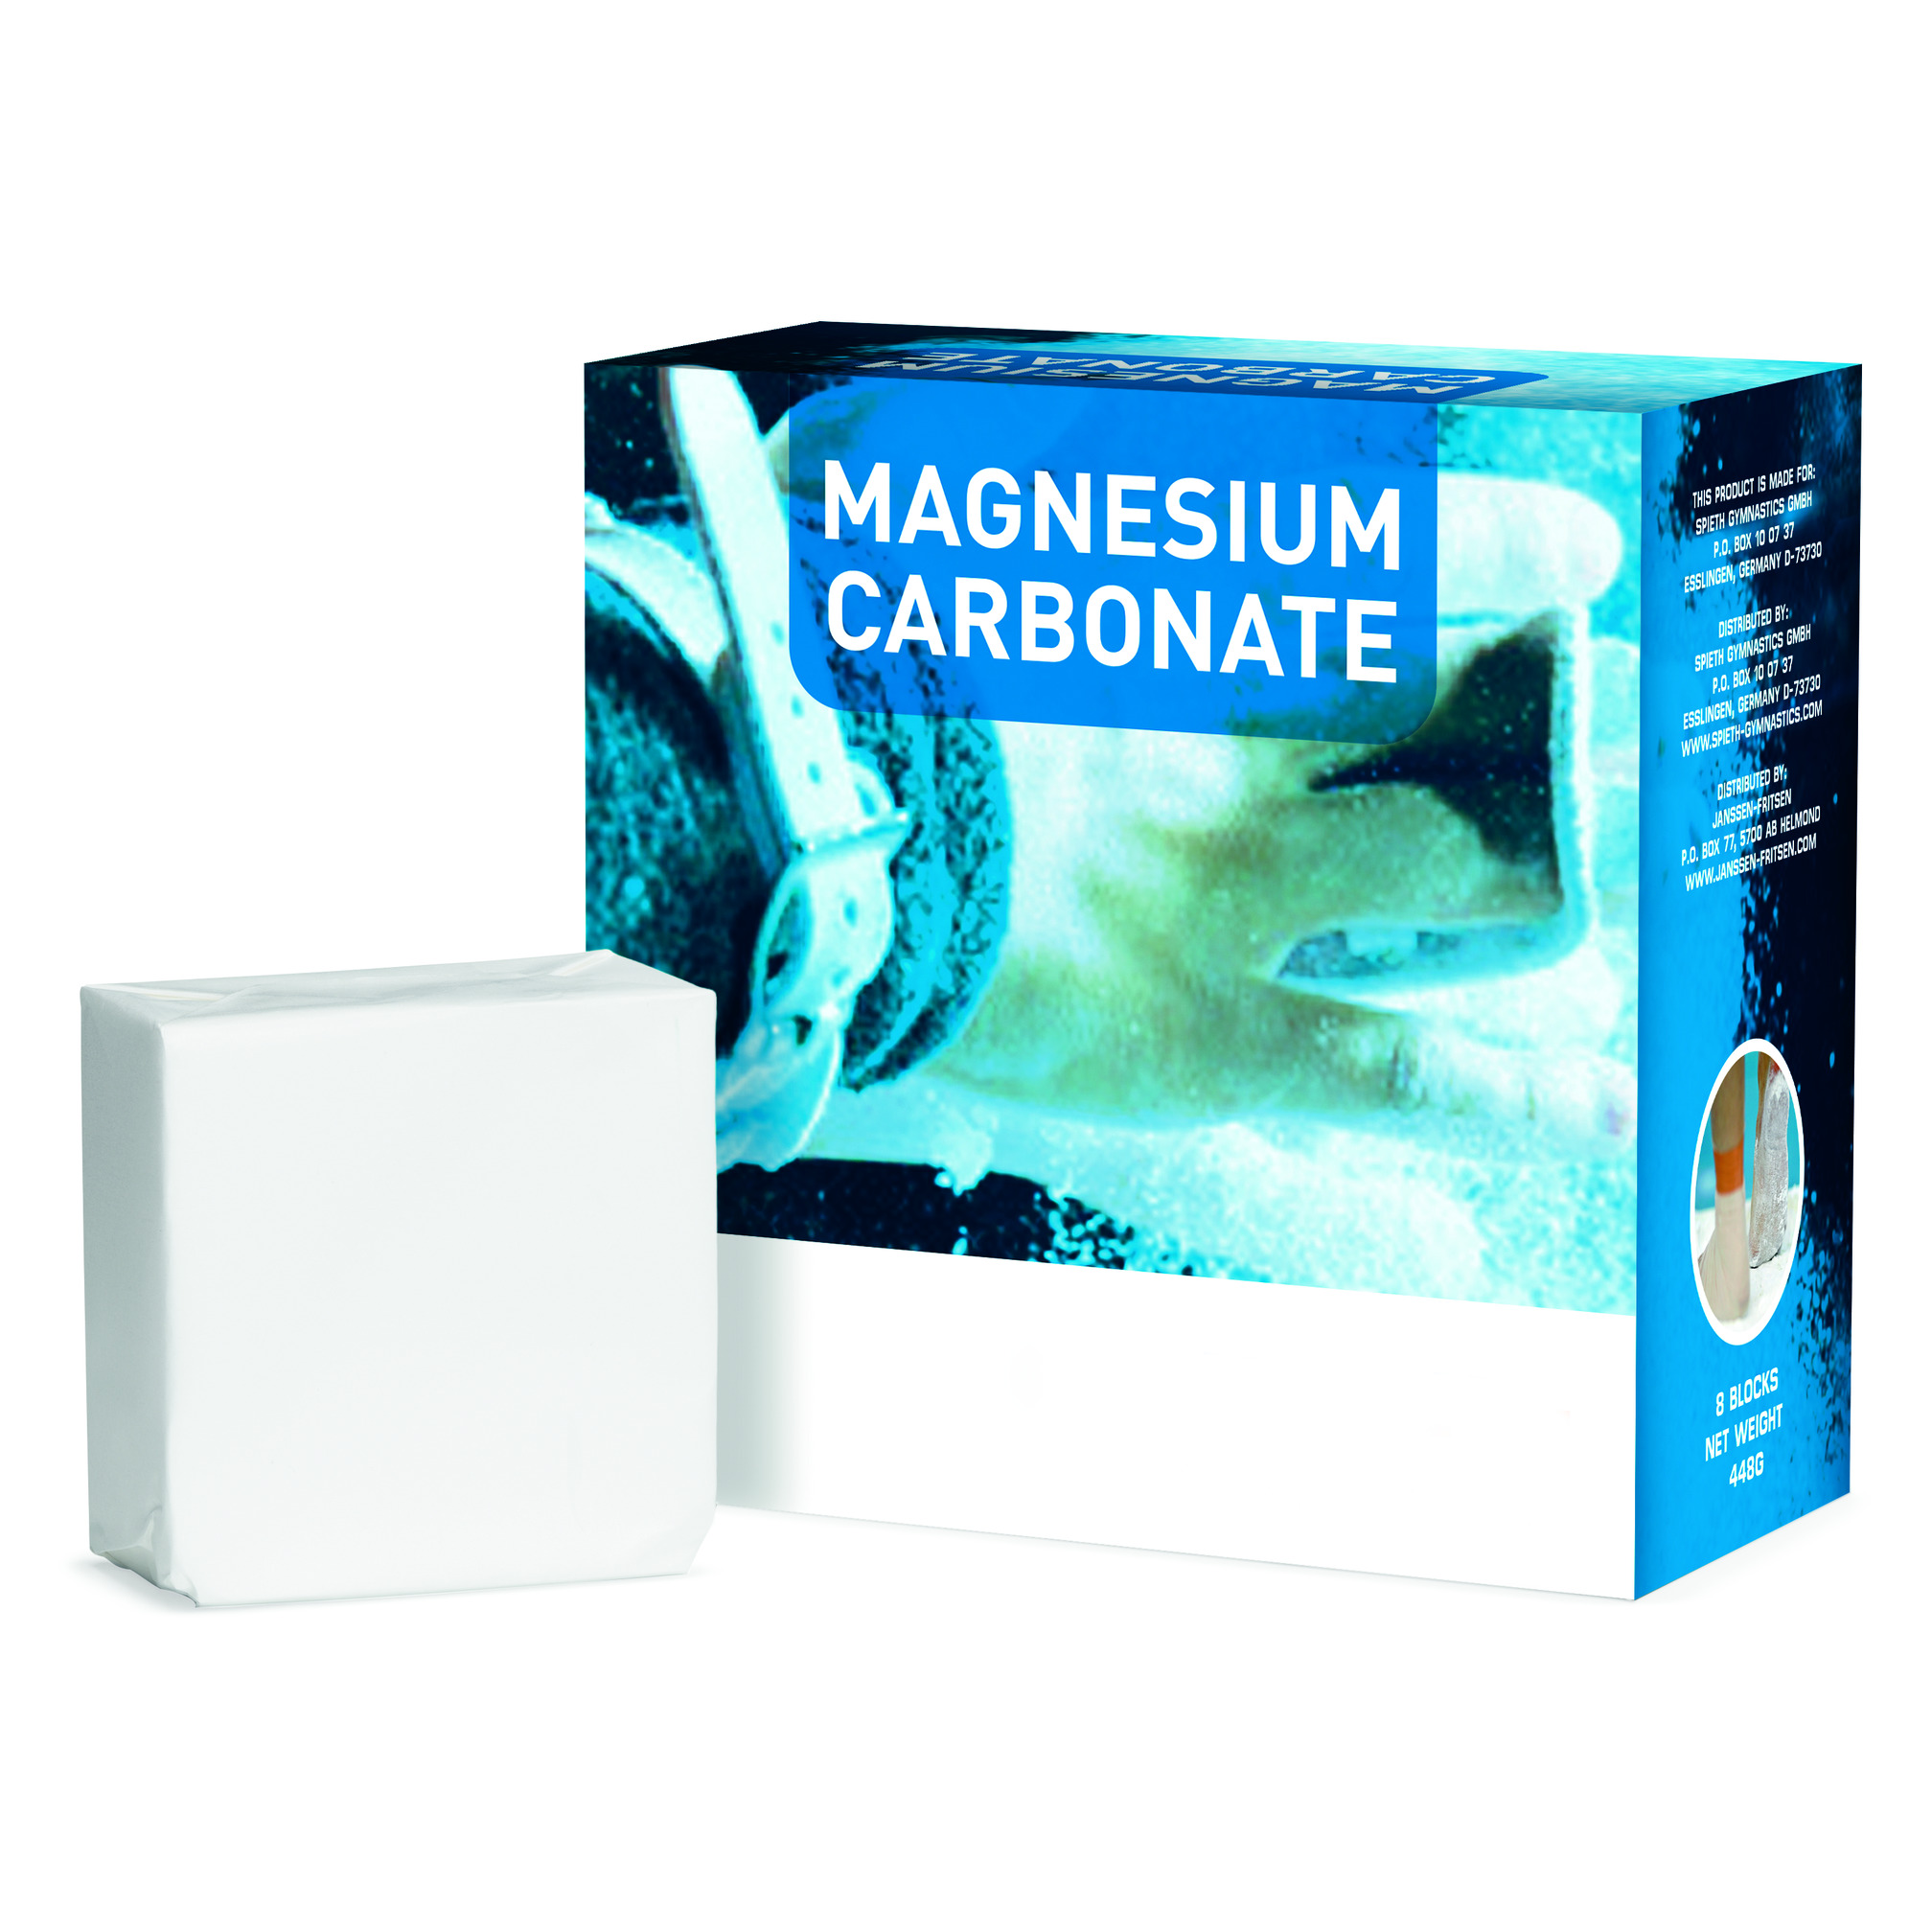 Magnesium, 8 blocks